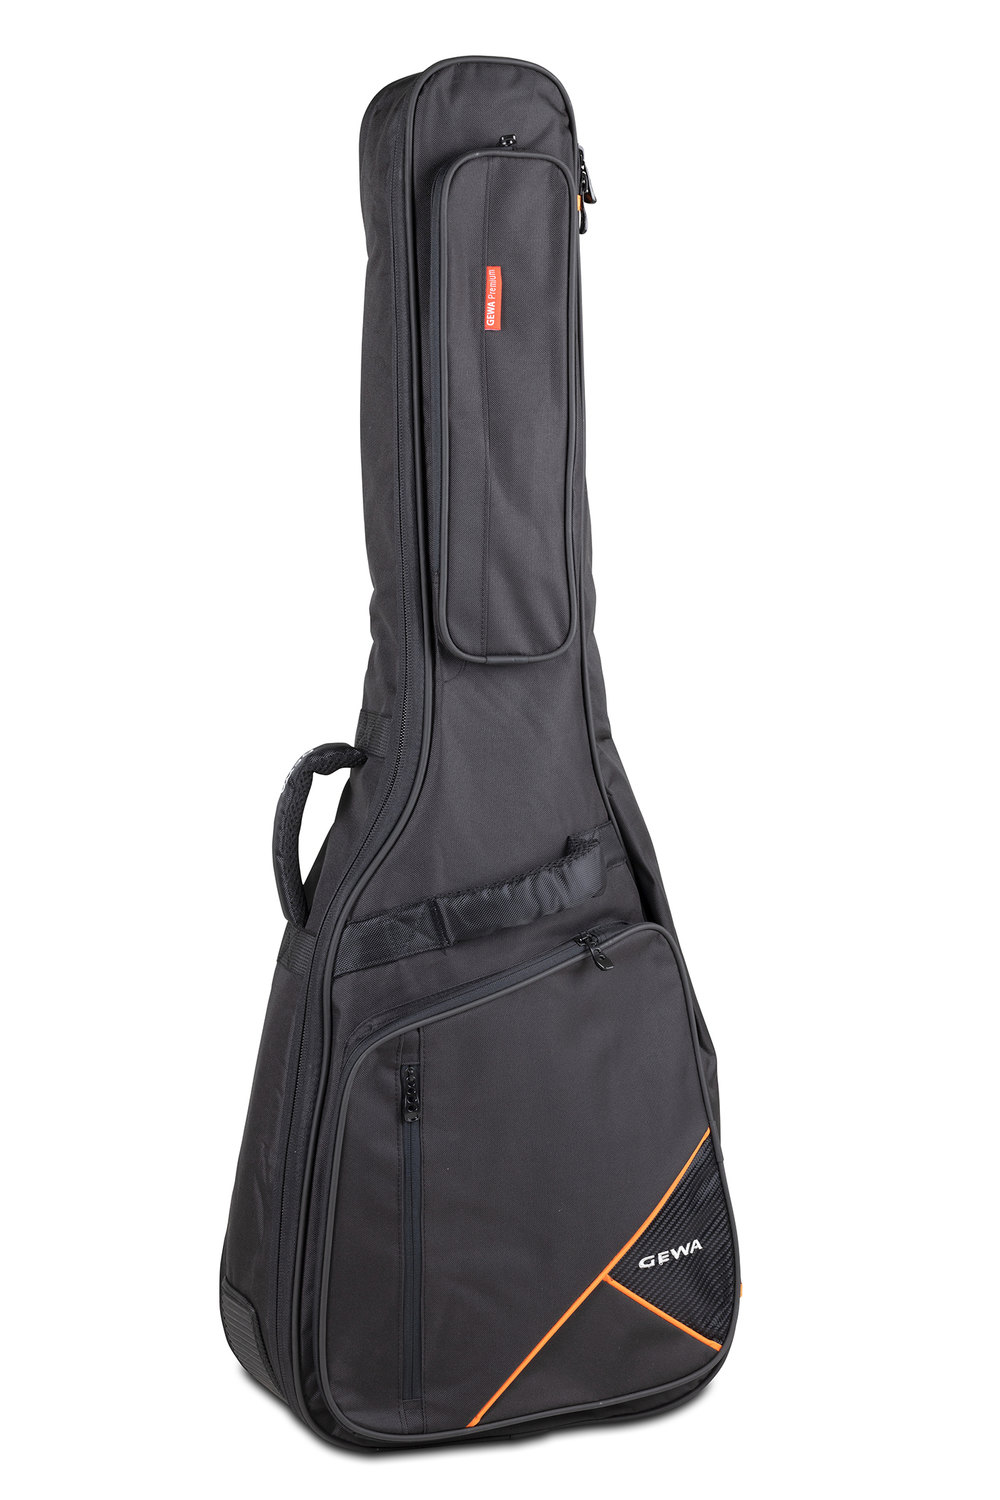 Guitar gig bag Premium 20 Acoustic black